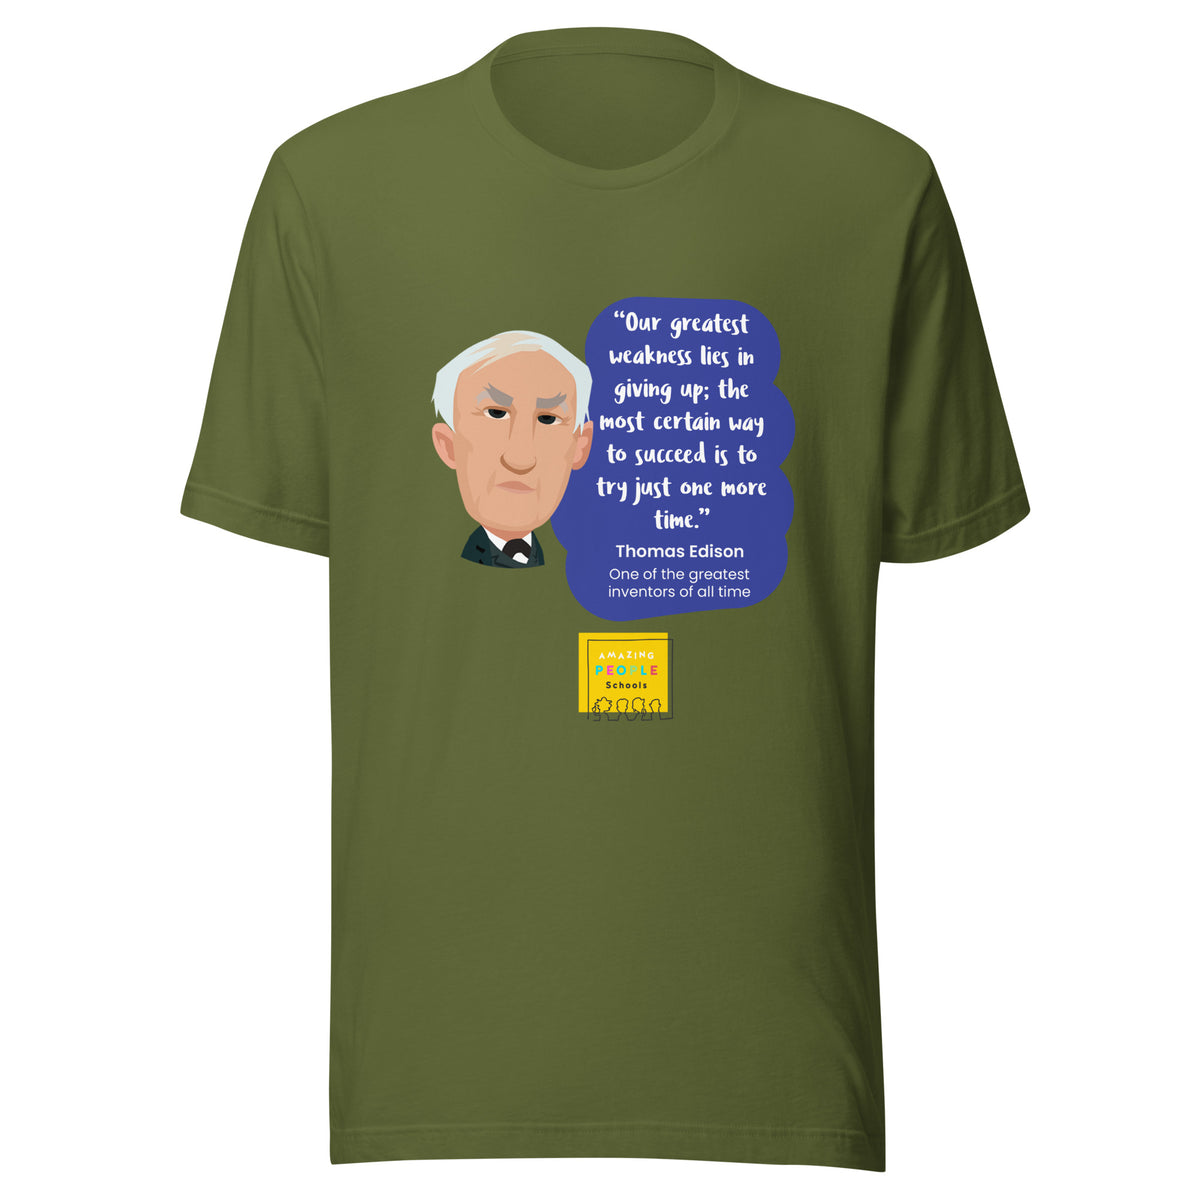 Thomas Edison Unisex T-shirt